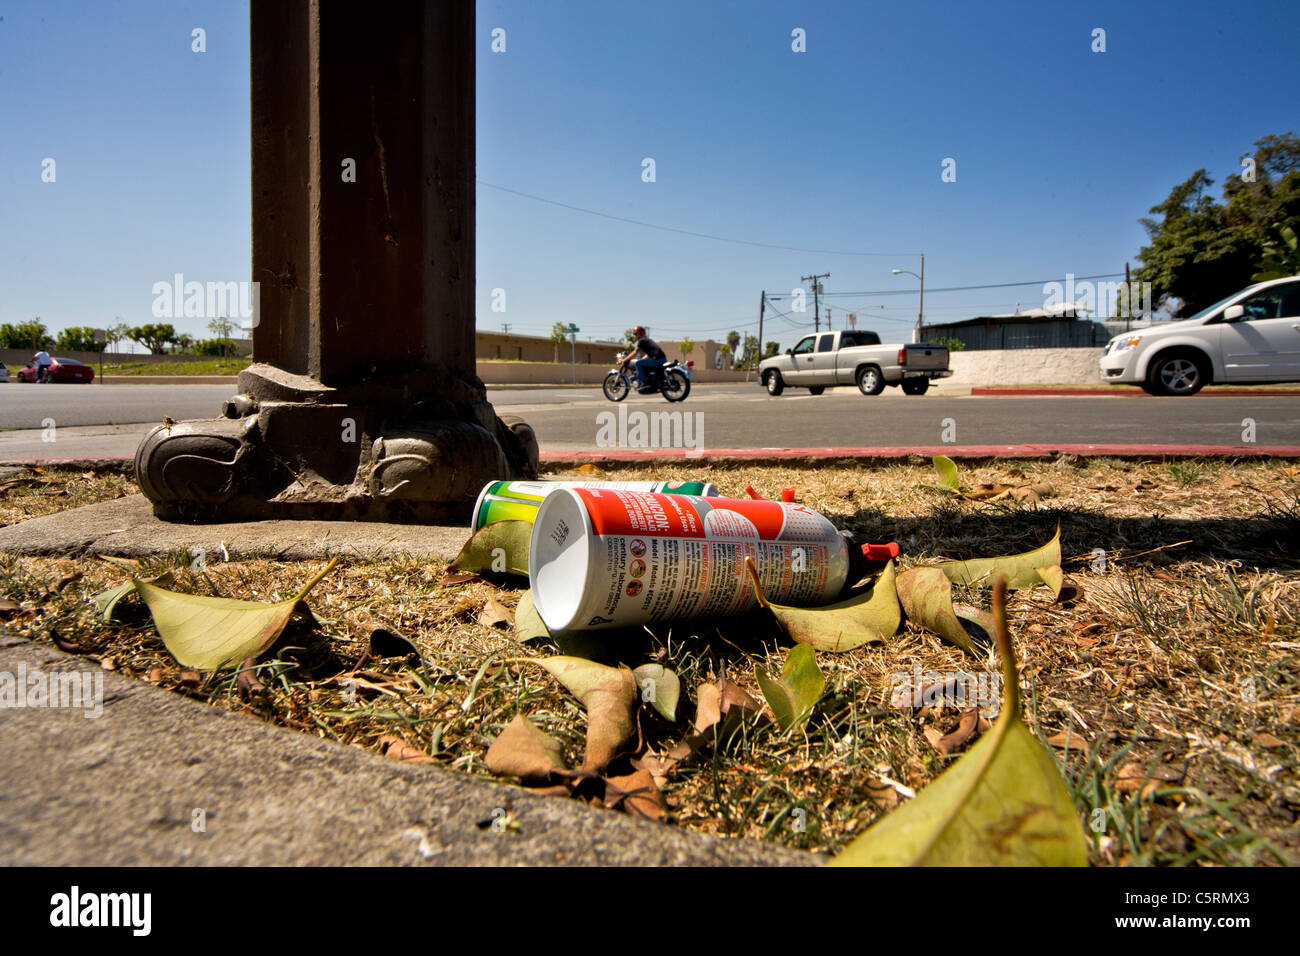 Les contenants vides de substances inhalées utilisés pour les consommateurs de drogues illicites 'hauts' se trouvent à côté d'une intersection à Santa Ana, CA. Banque D'Images